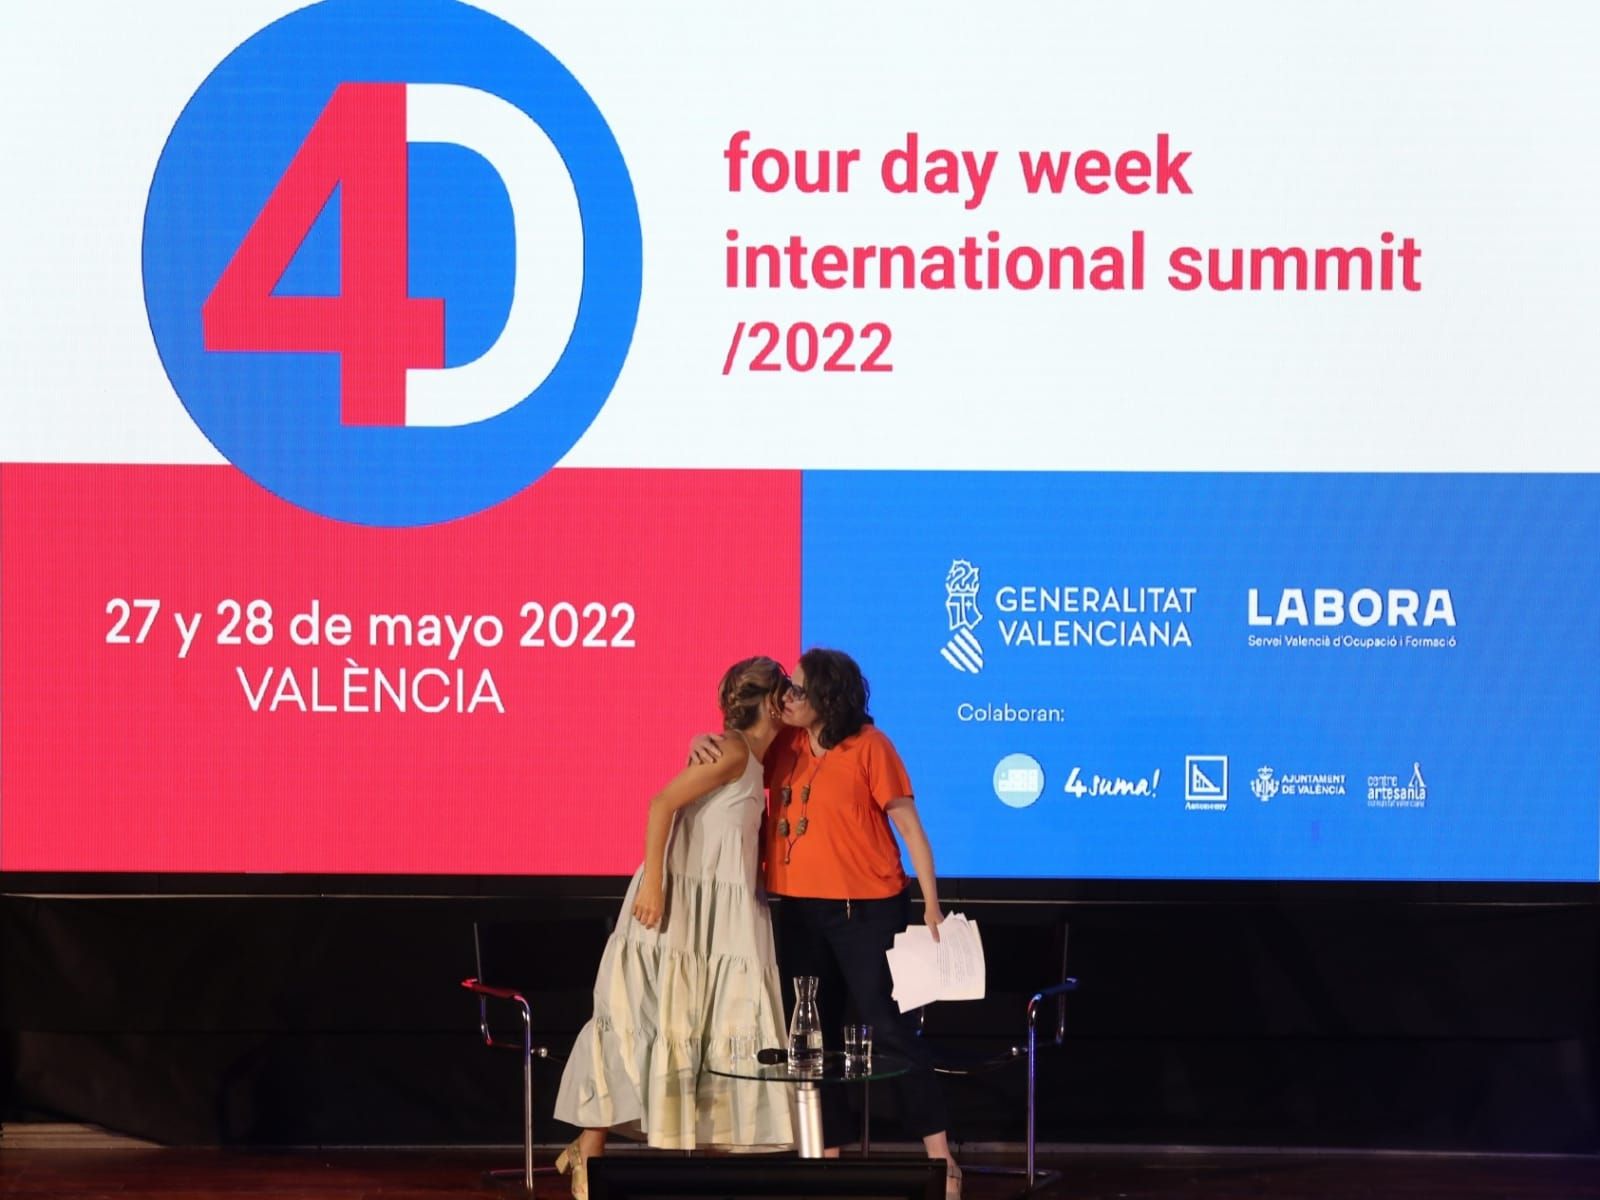 Díaz y Oltra en el congreso internacional sobre la semana de cuatro días que se celebra en València.